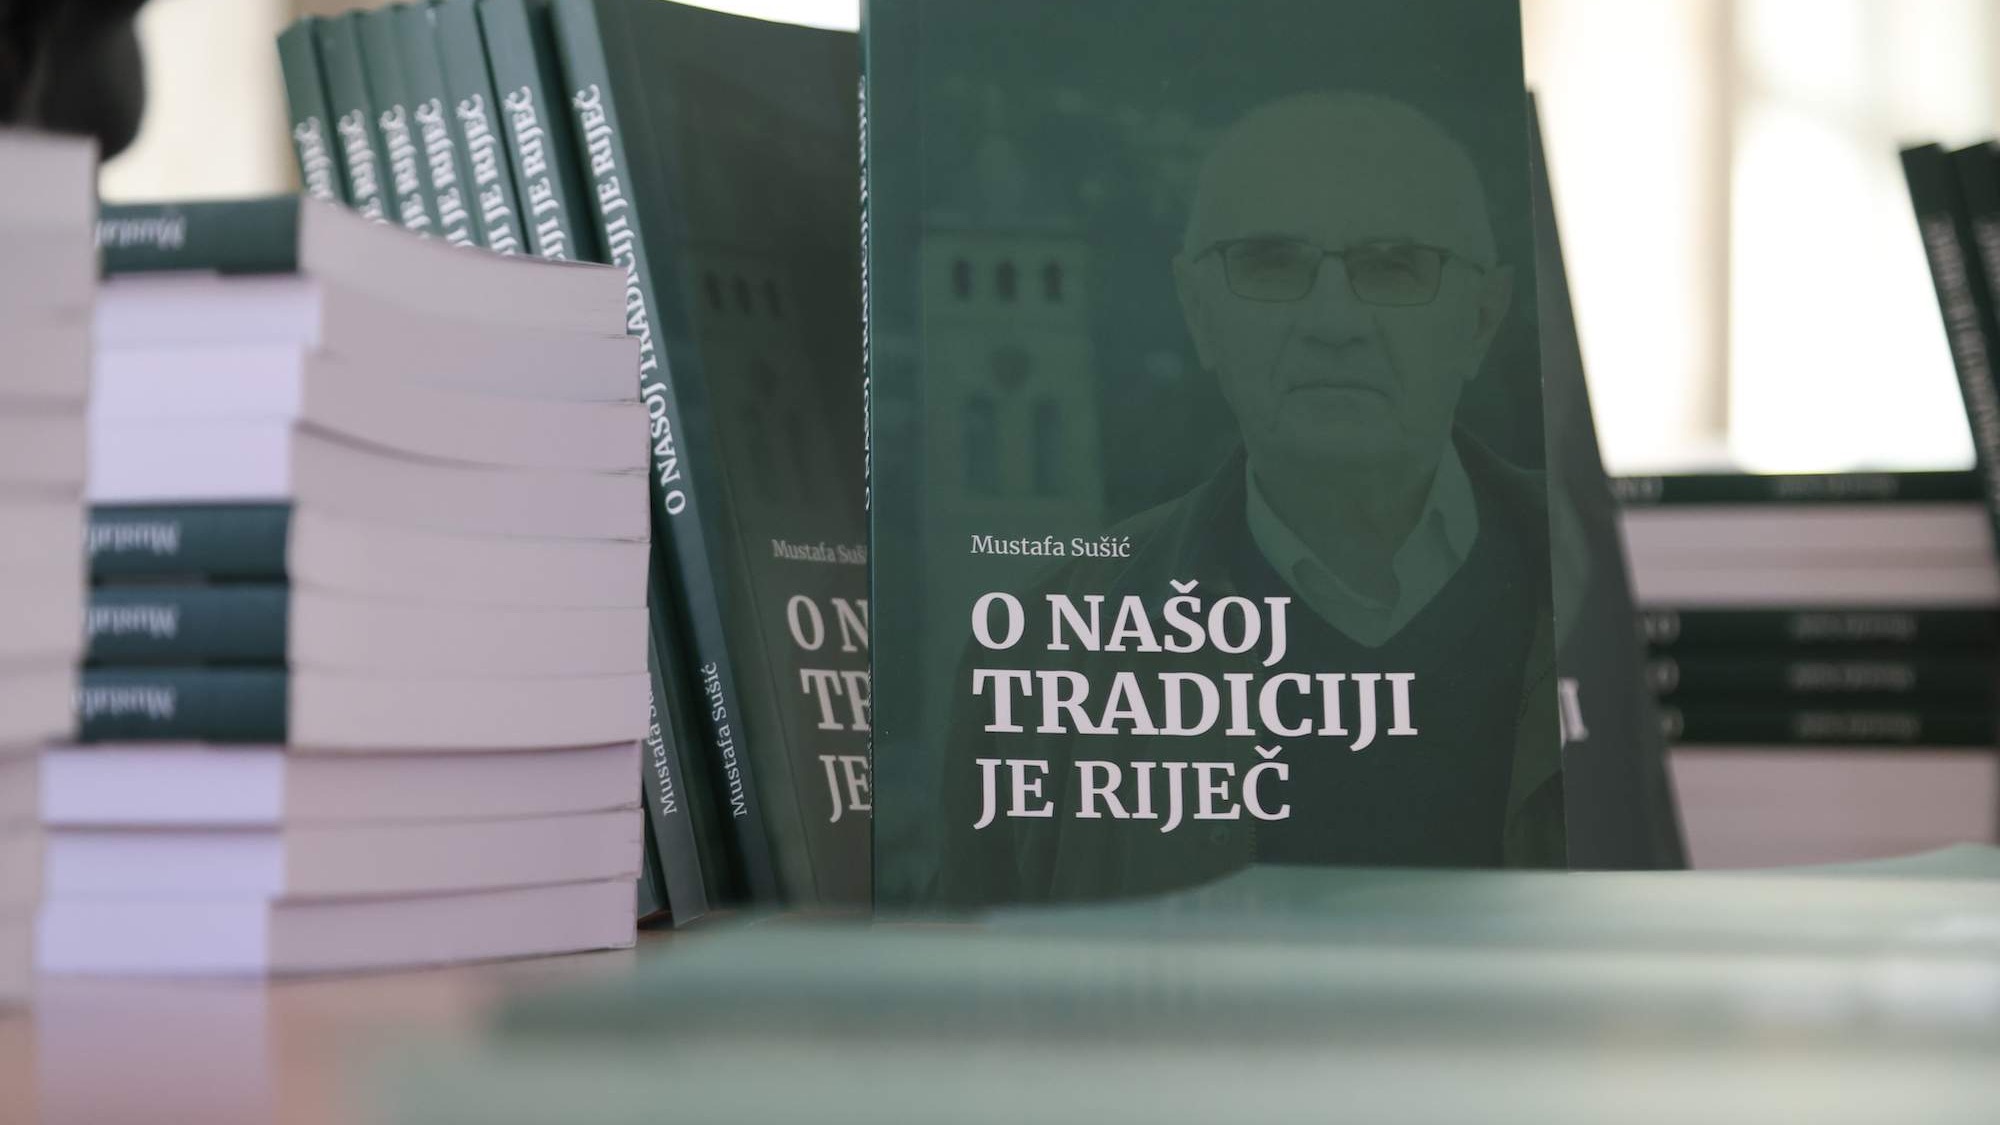 Promovirana knjiga "O našoj tradiciji je riječ" profesora Mustafe Sušića